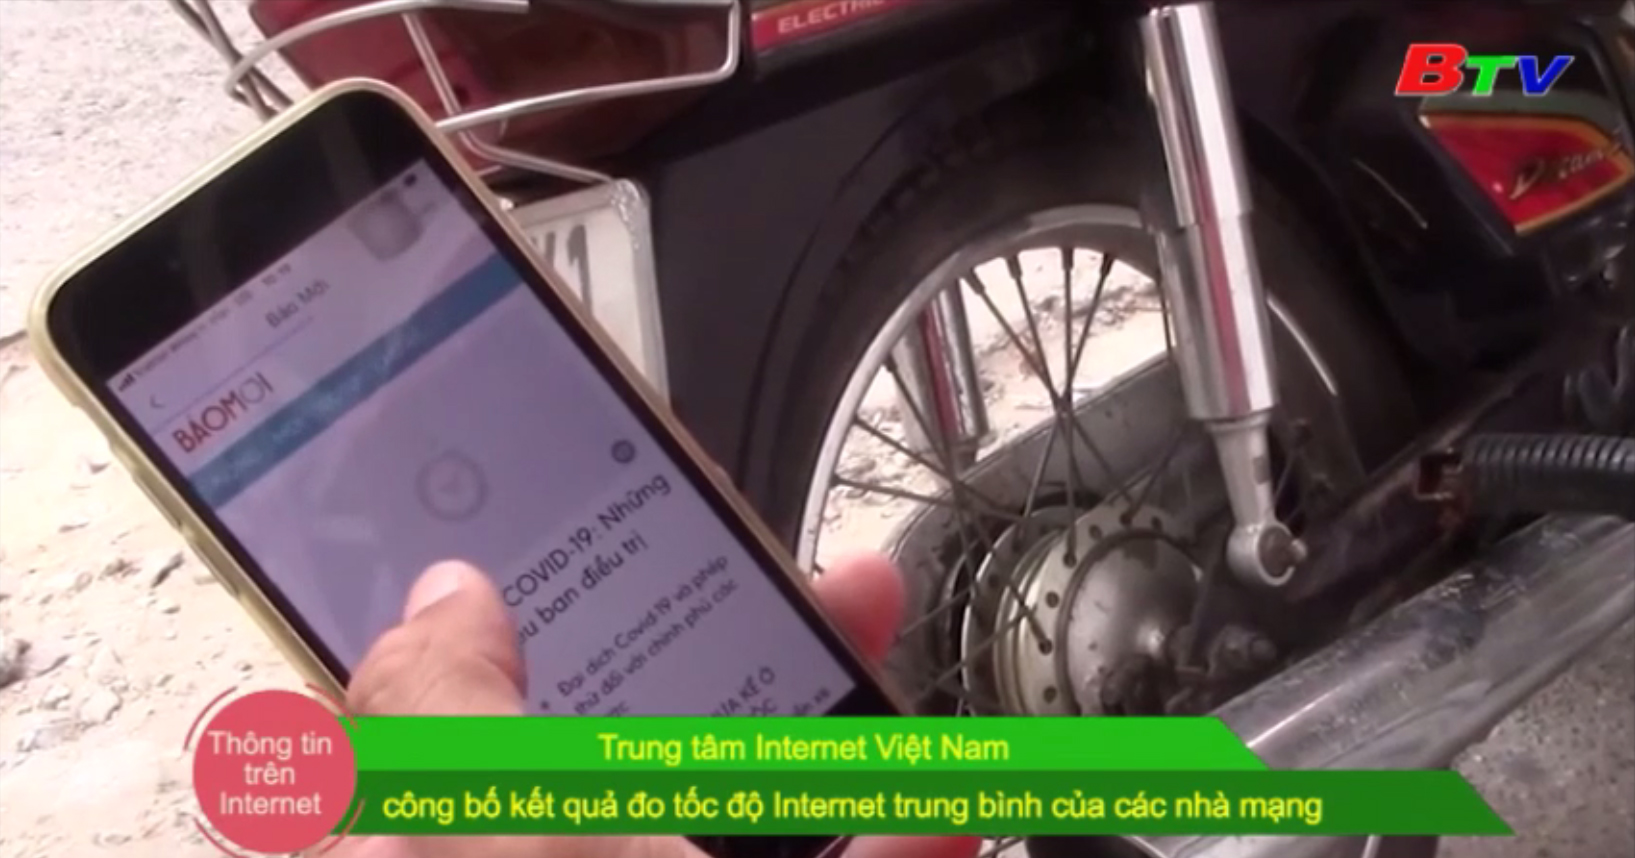 Trung tâm Internet Việt Nam công bố kết quả đo tốc độ internet trung bình của các nhà mạng